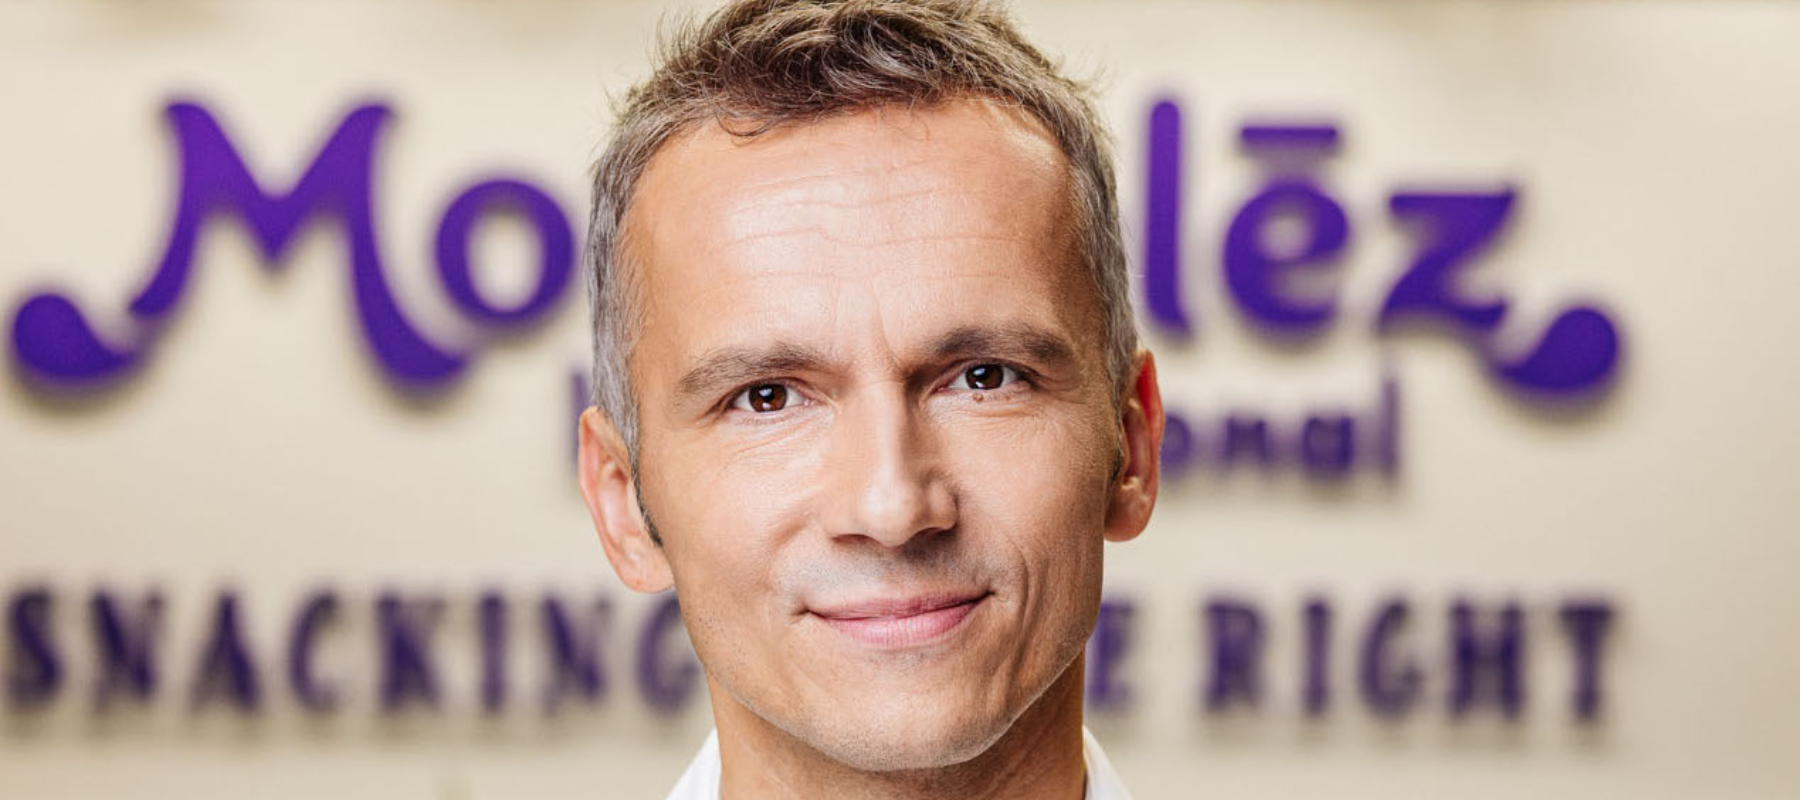 Marcin Dobrock aangesteld als Vice President en Managing Director Mondelēz International